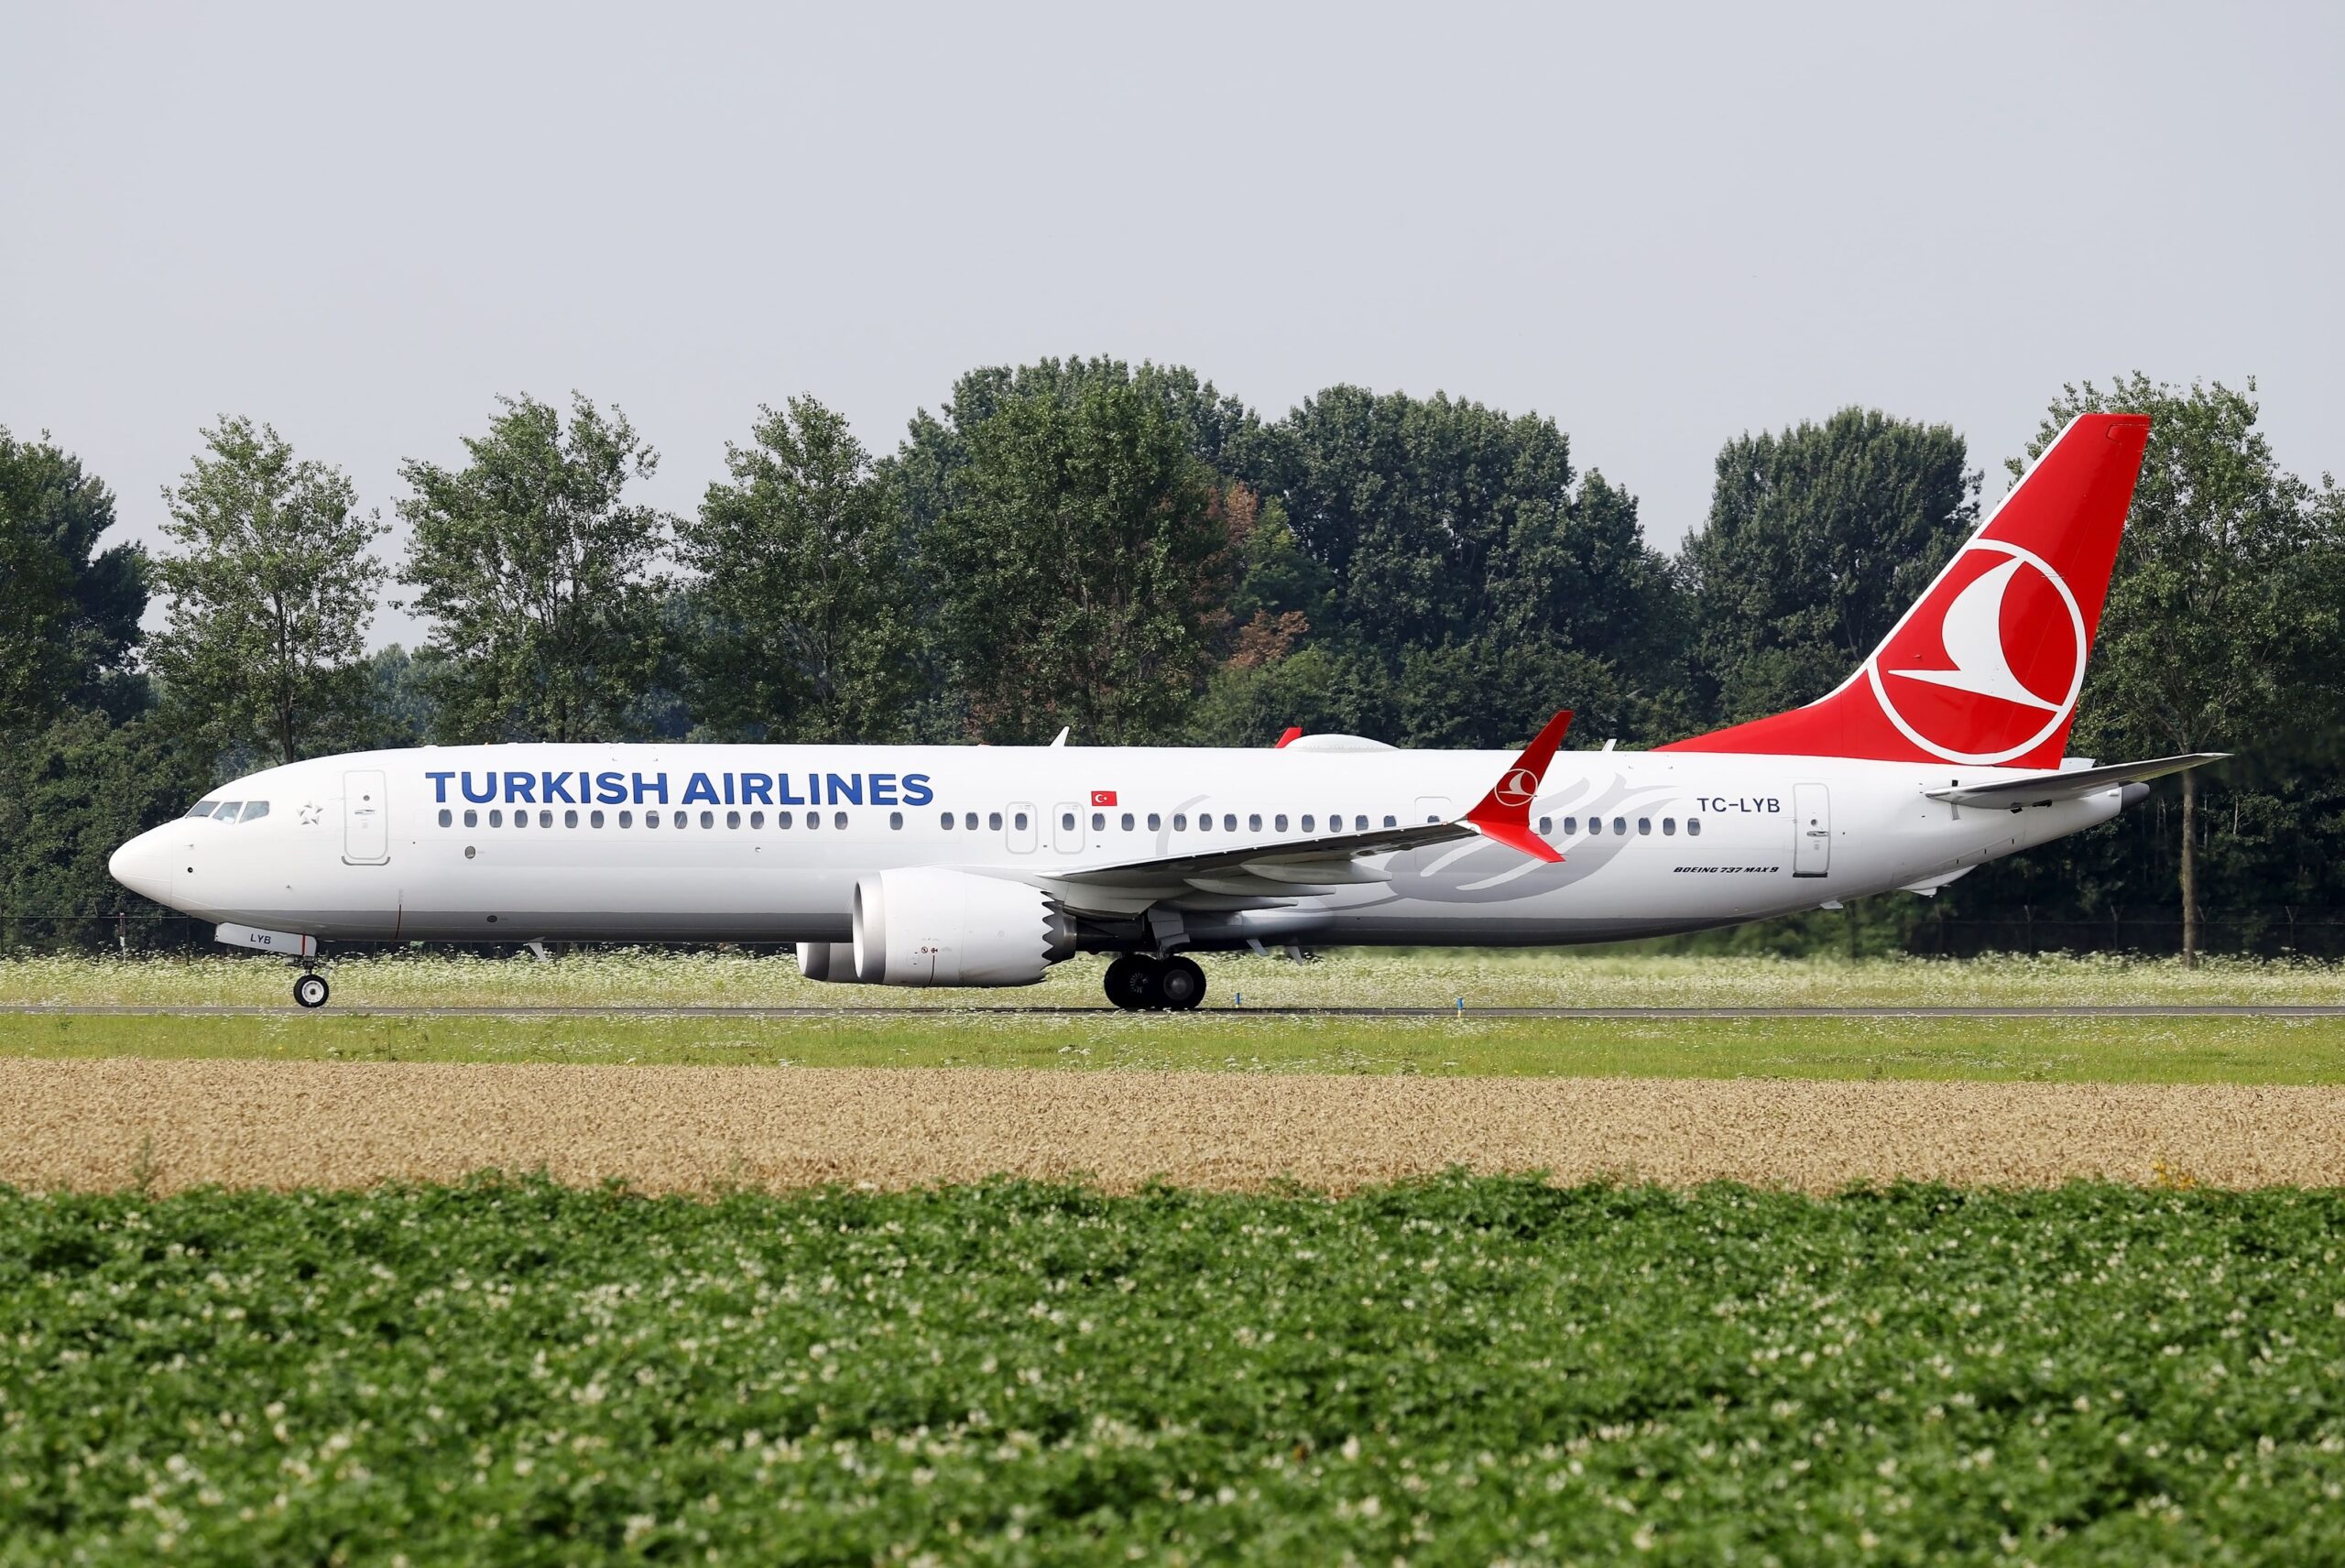 Turkish Airlines a favor del medio ambiente